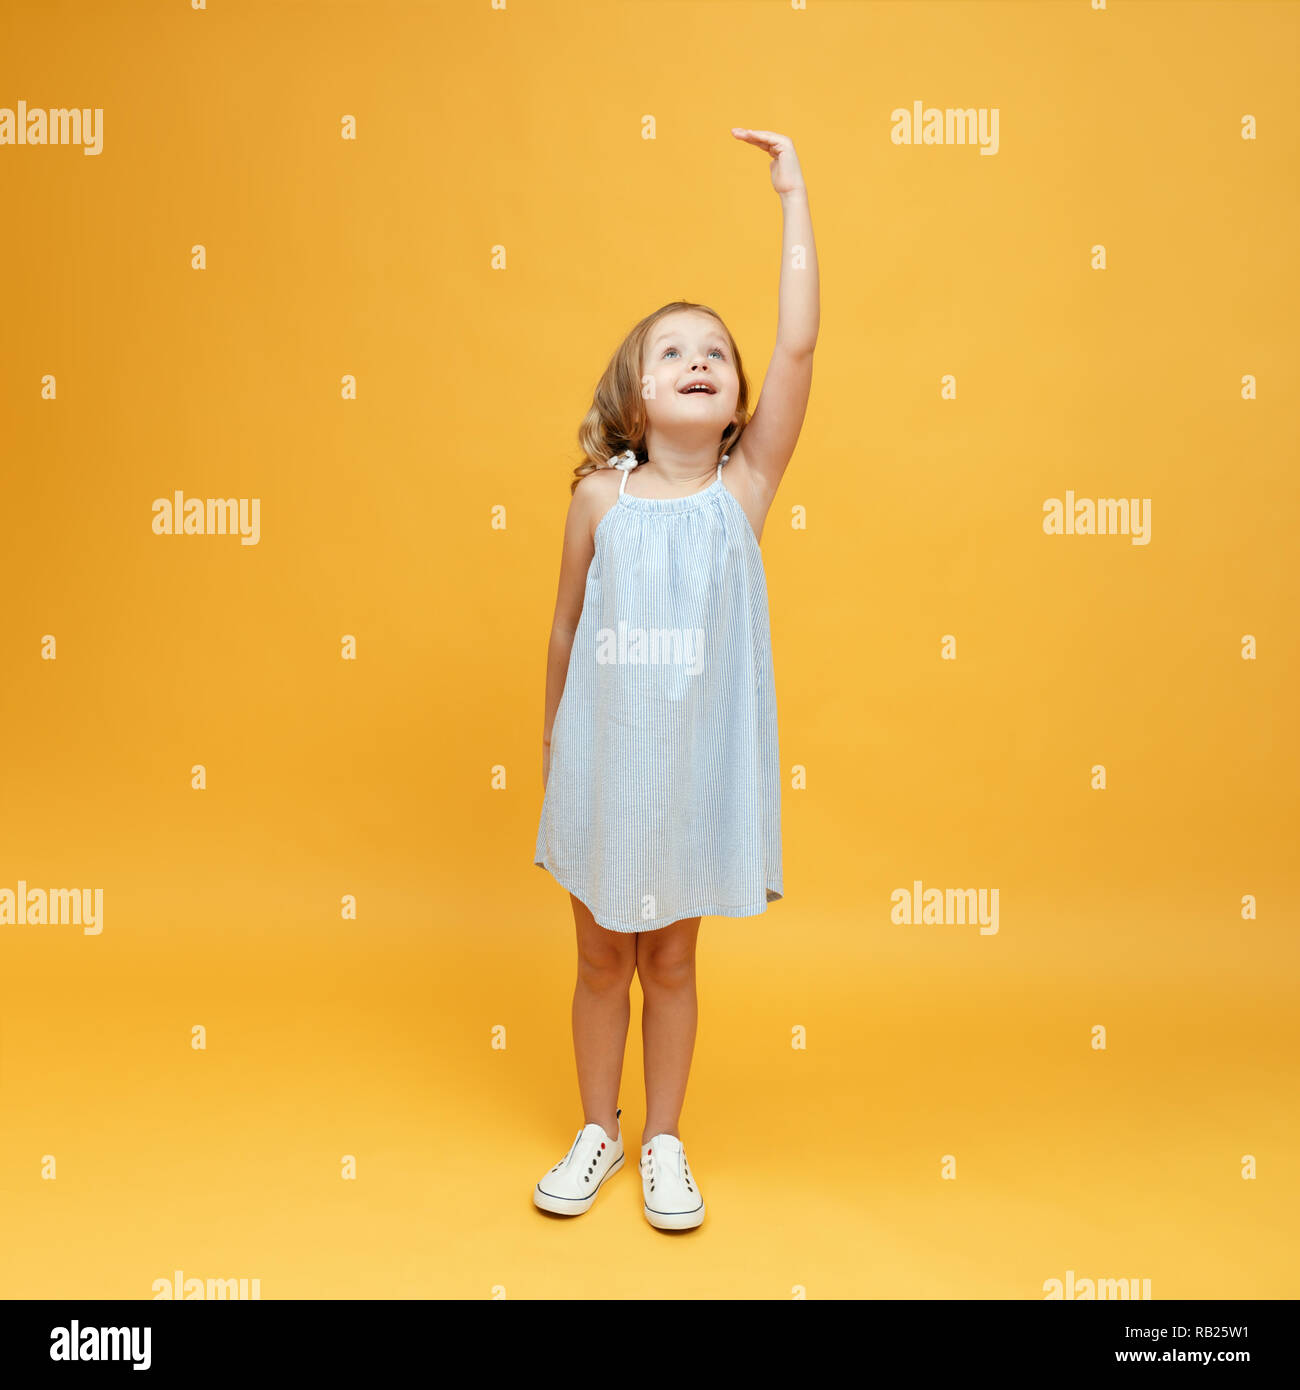 Ein kleines Kind Maßnahmen ihre Höhe auf einem gelben Hintergrund. Konzept der Entwicklung, Ziel, Erfolg Stockfoto